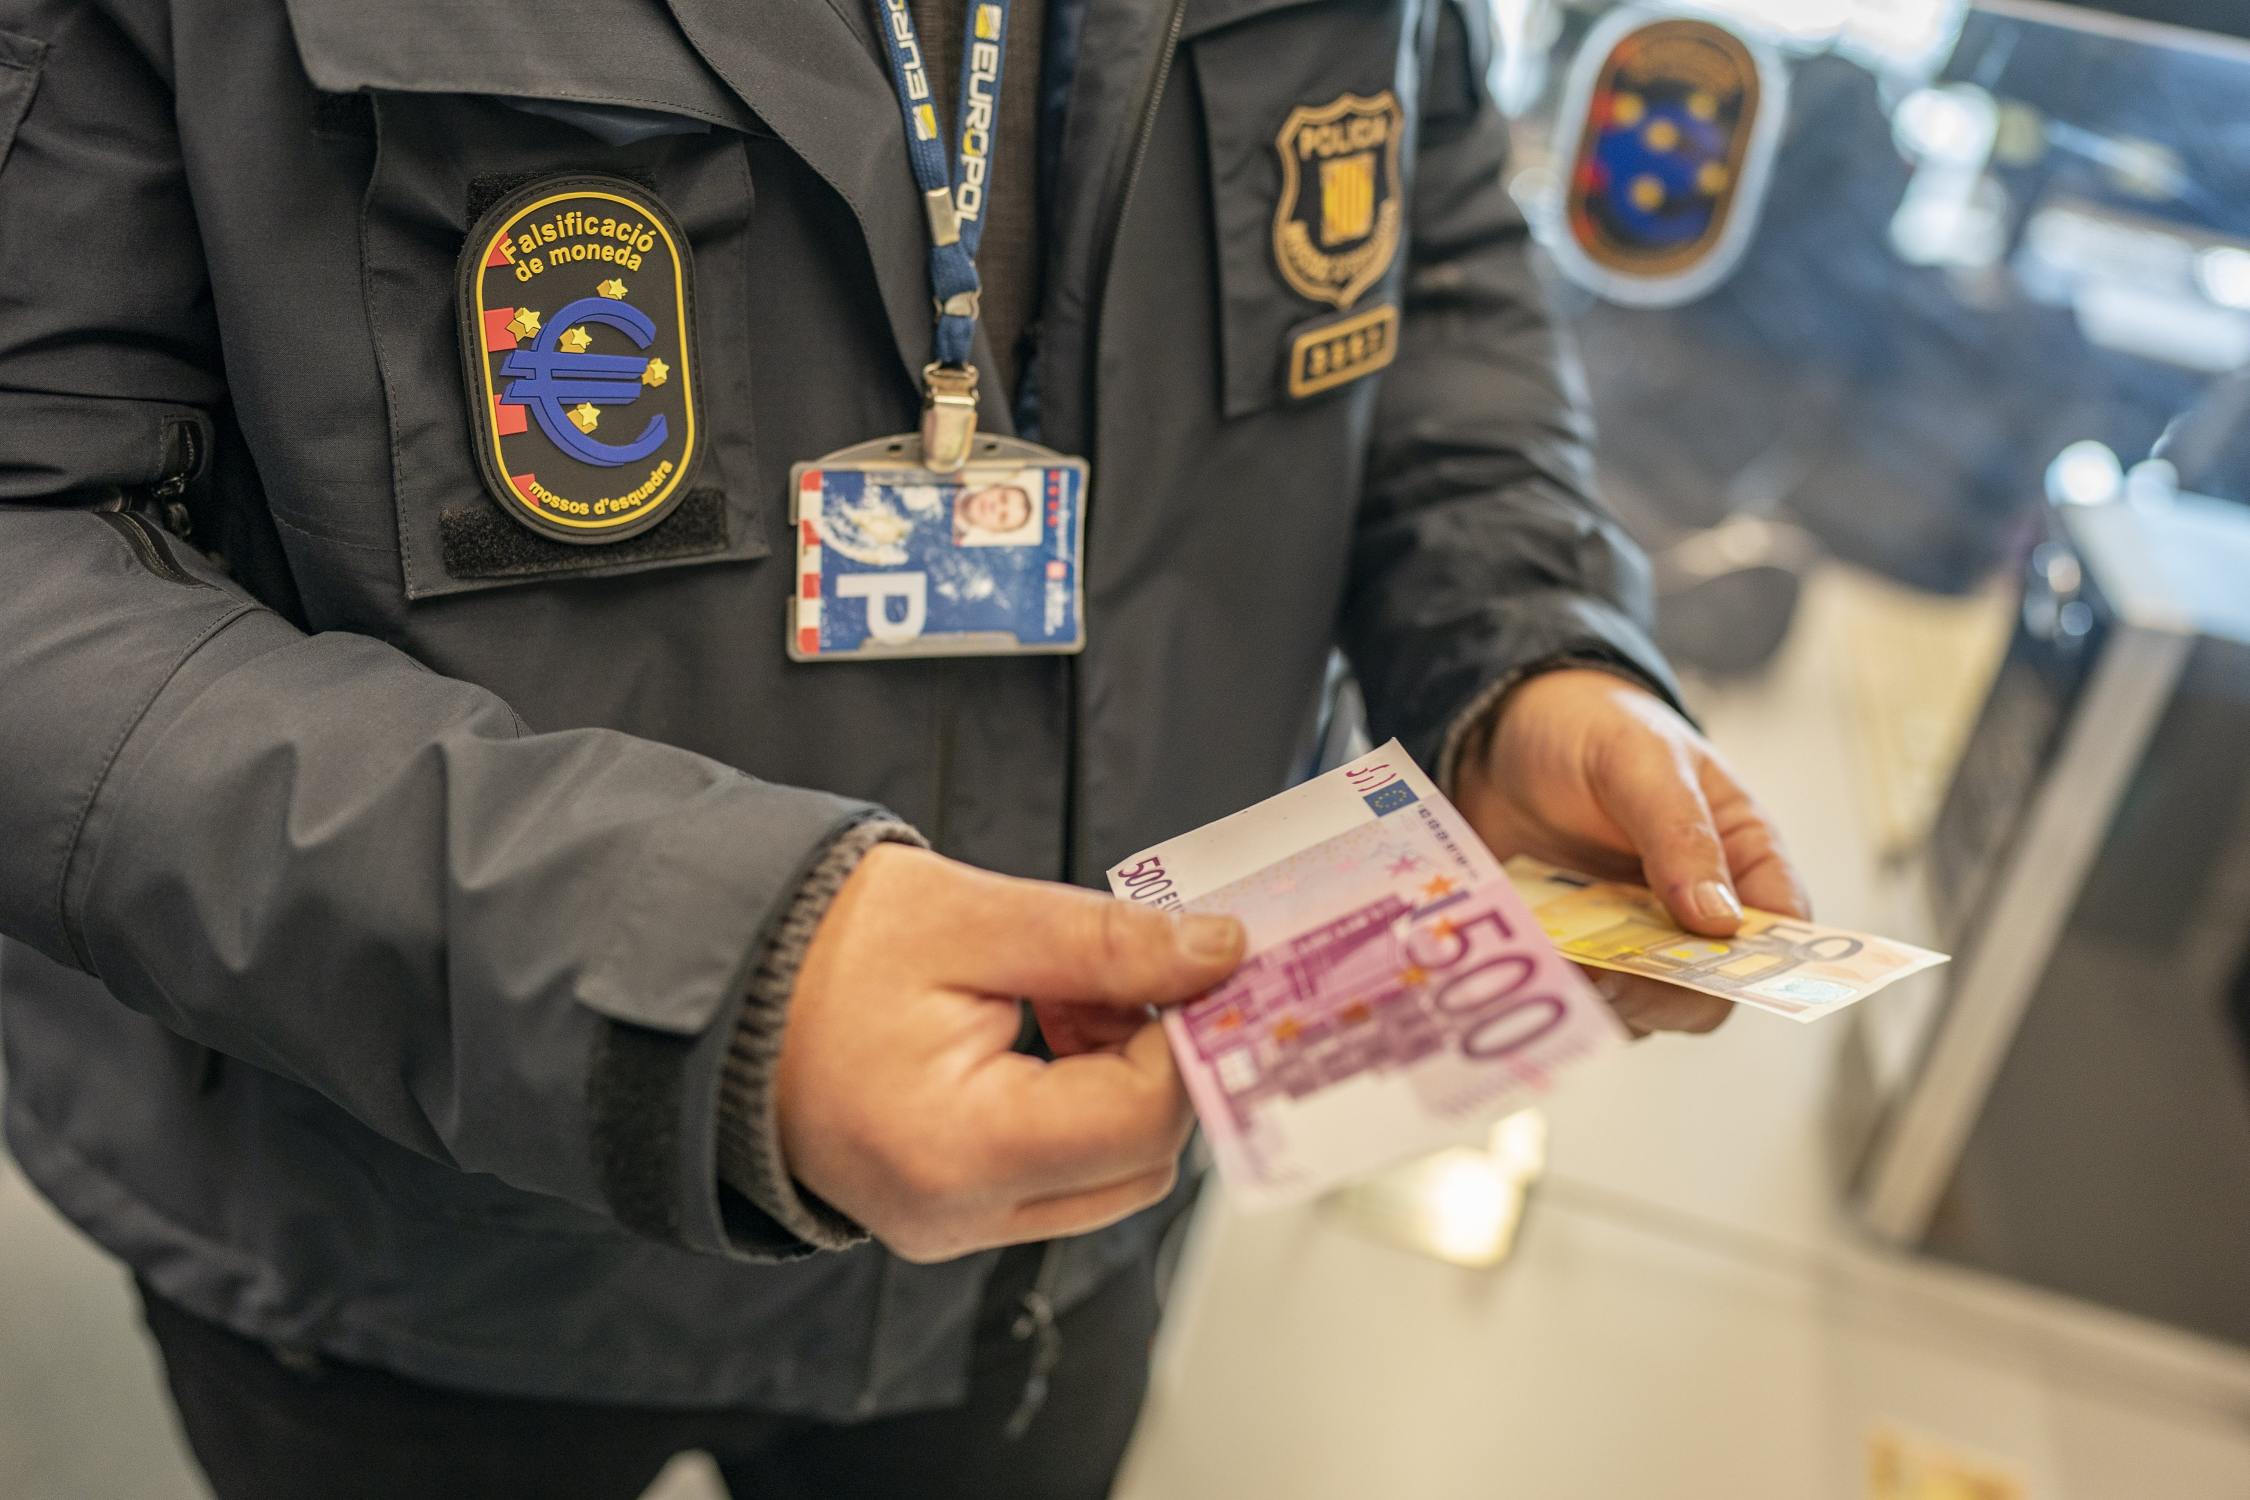 La facilidad de comprar billetes falsos empuja a jóvenes al mundo criminal: de 8 a 12 años de cárcel